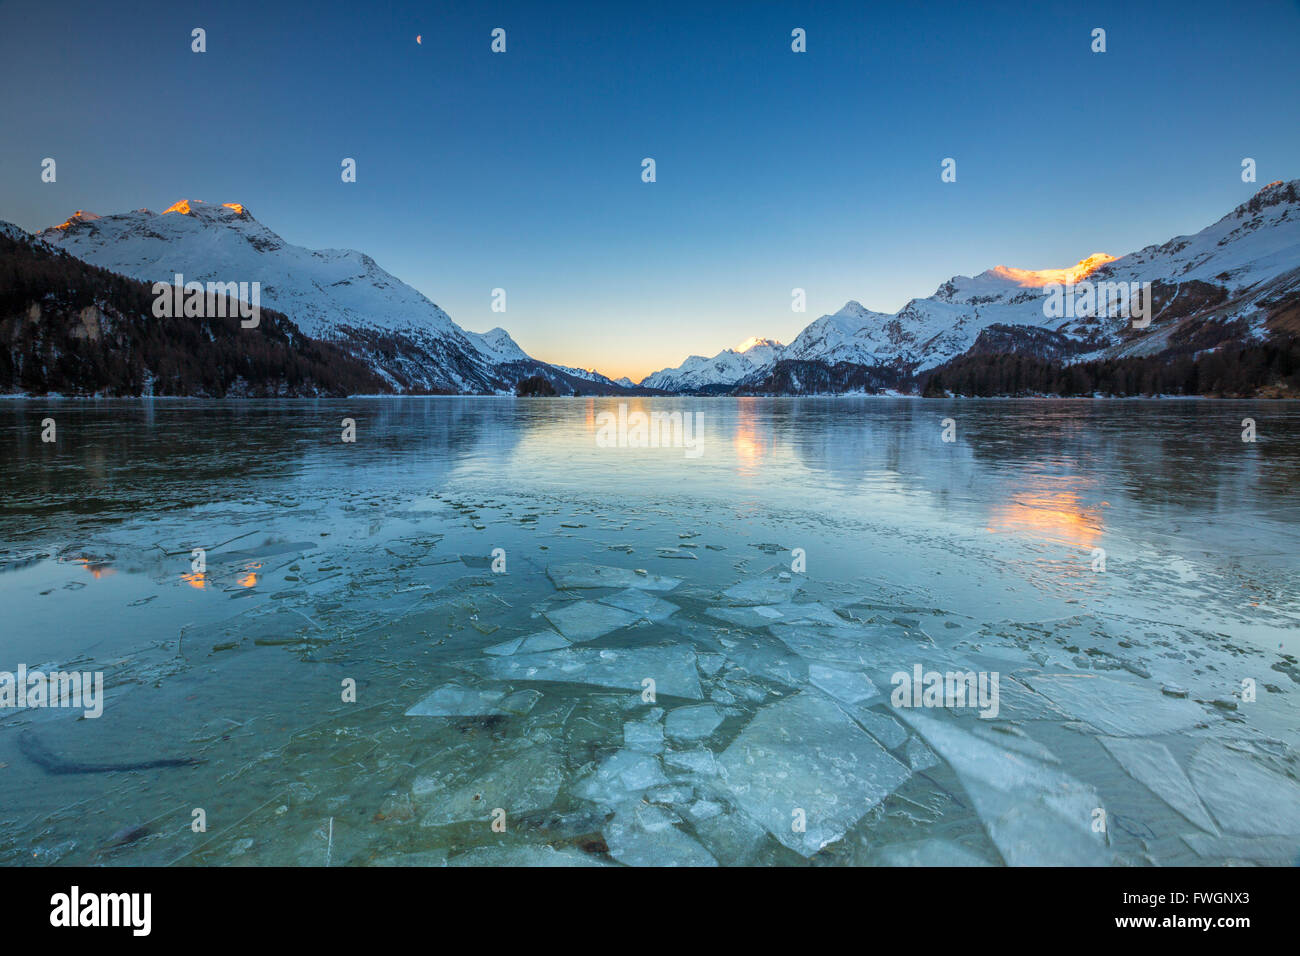 Eisschollen auf der Oberfläche der Silsersee in einem kalten Wintermorgen im Morgengrauen, Engadin, Kanton Graubünden, Schweiz, Europa Stockfoto